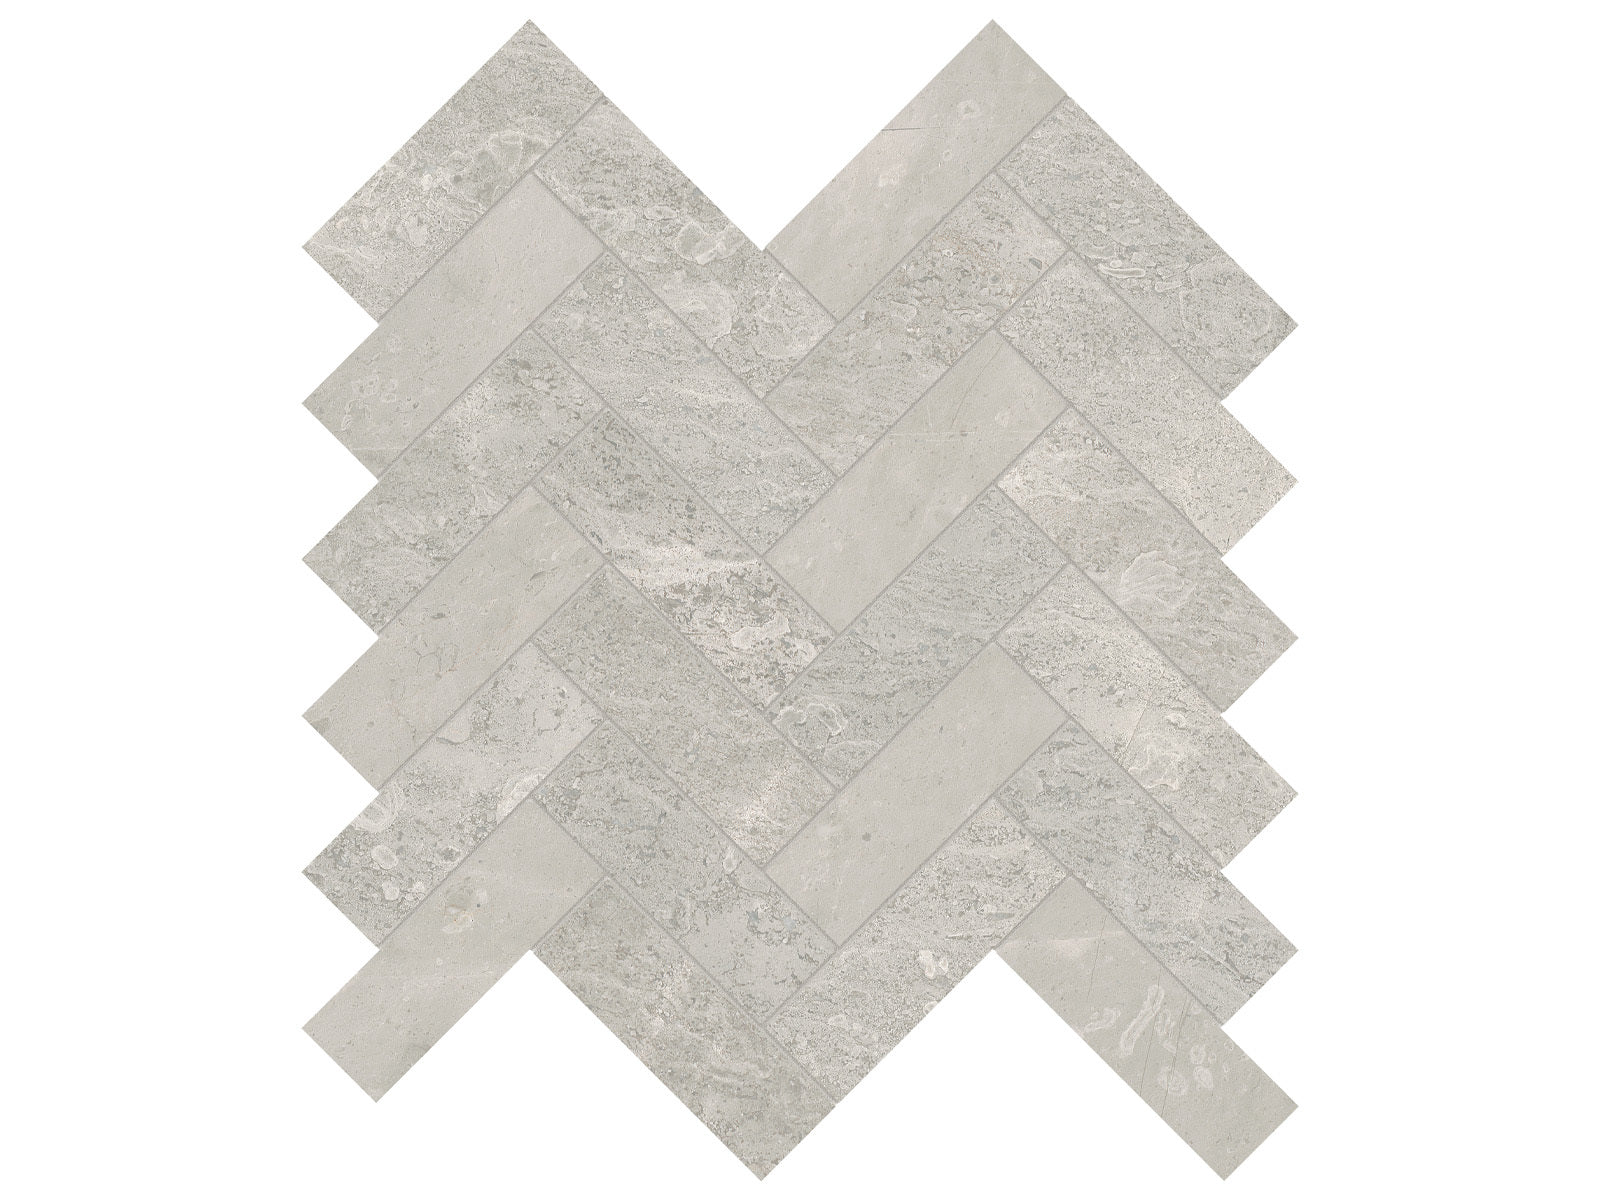 surface group anatolia marble anciano grigio 1&25х4 inch herringbone natural stone mosaic honed straight edge mesh